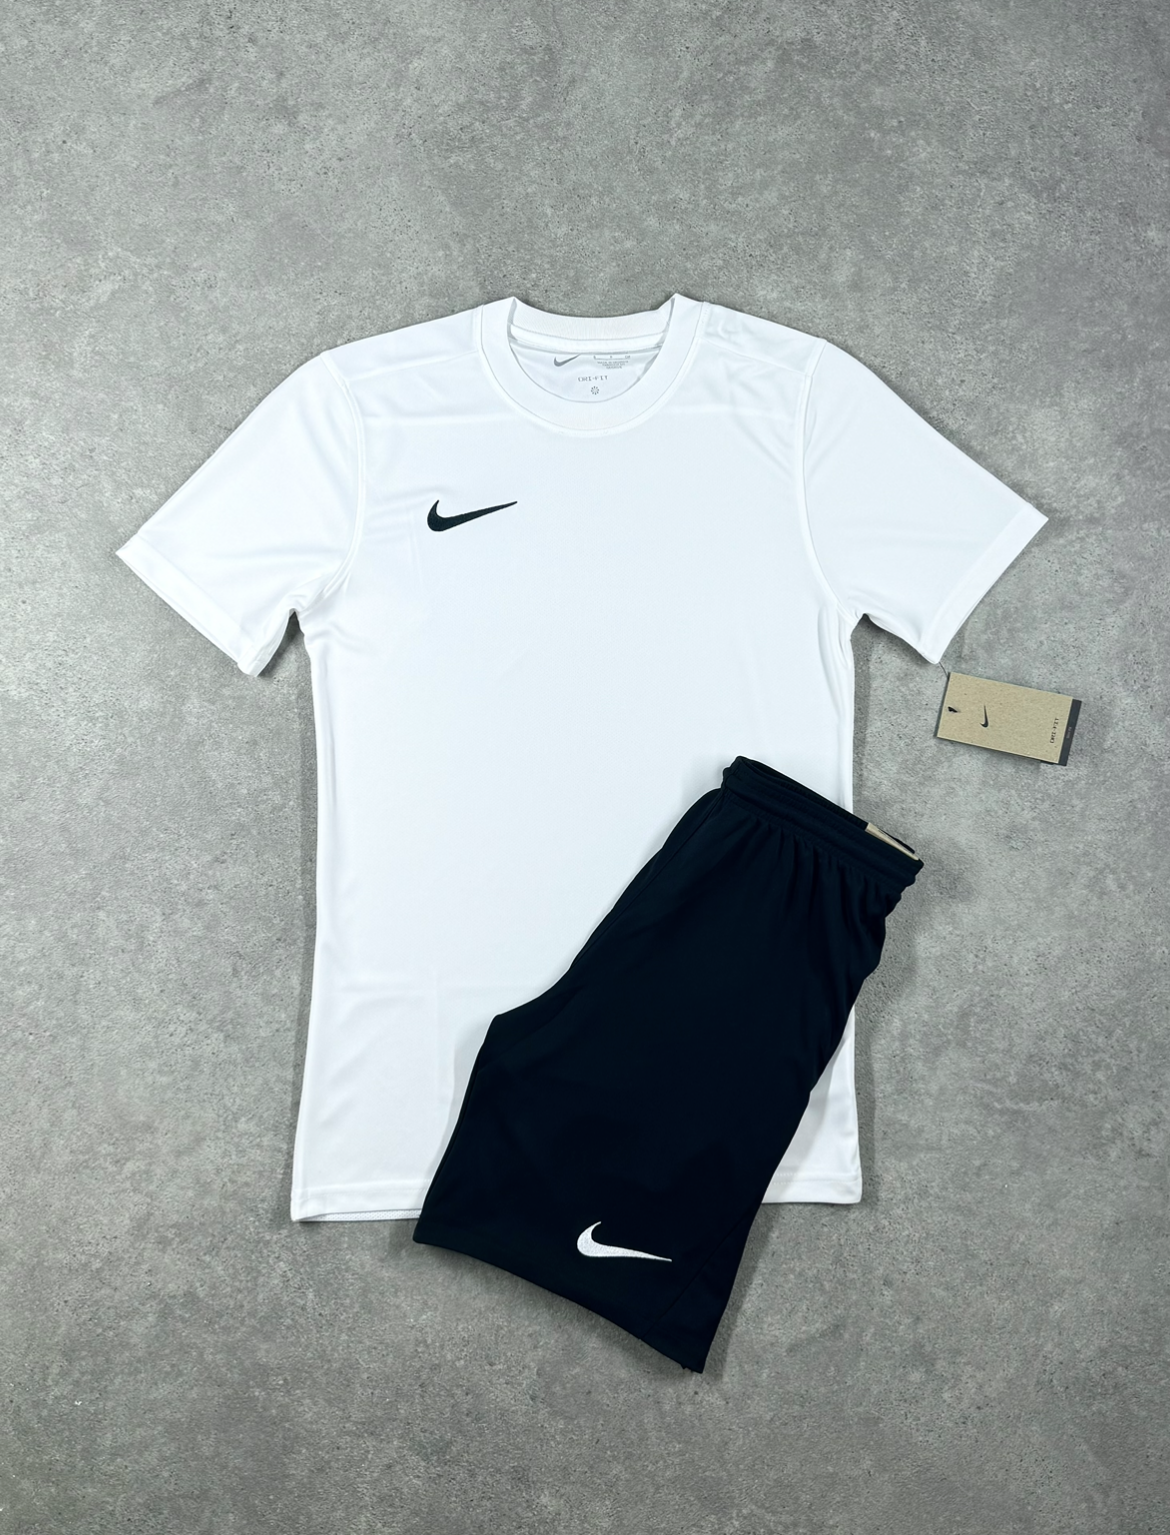 Nike - Dri Fit Set - White/Black